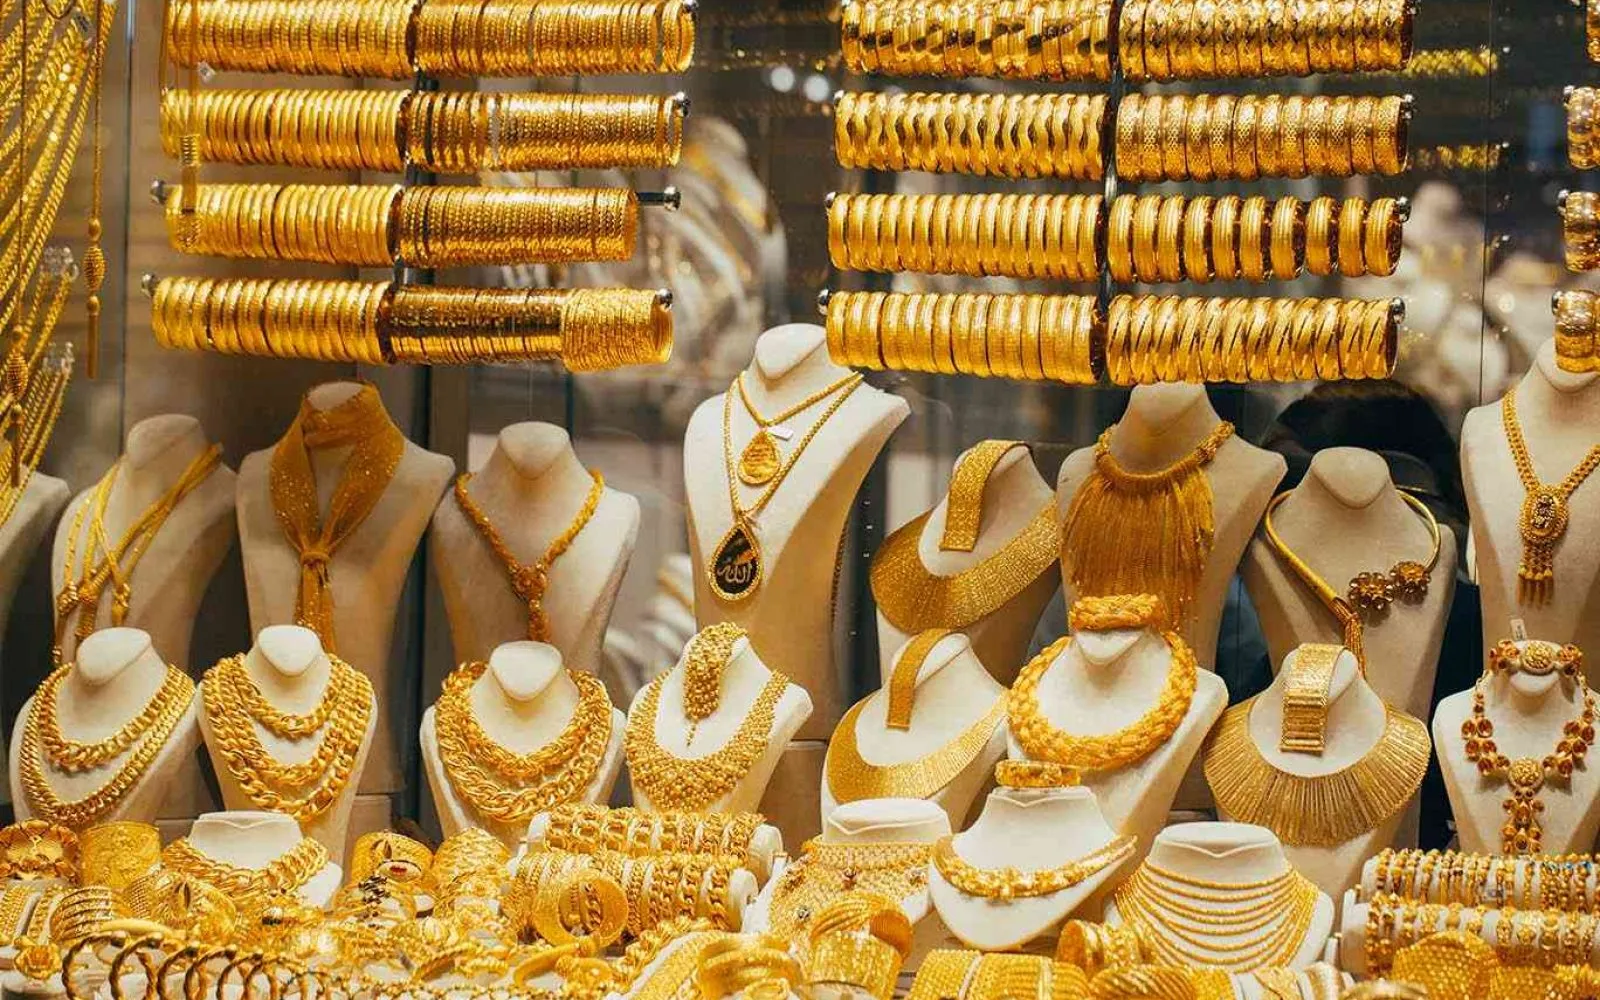 استنزاف أسعار الذهب بشكل ملحوظ وأفضل فرصة للاستثمار